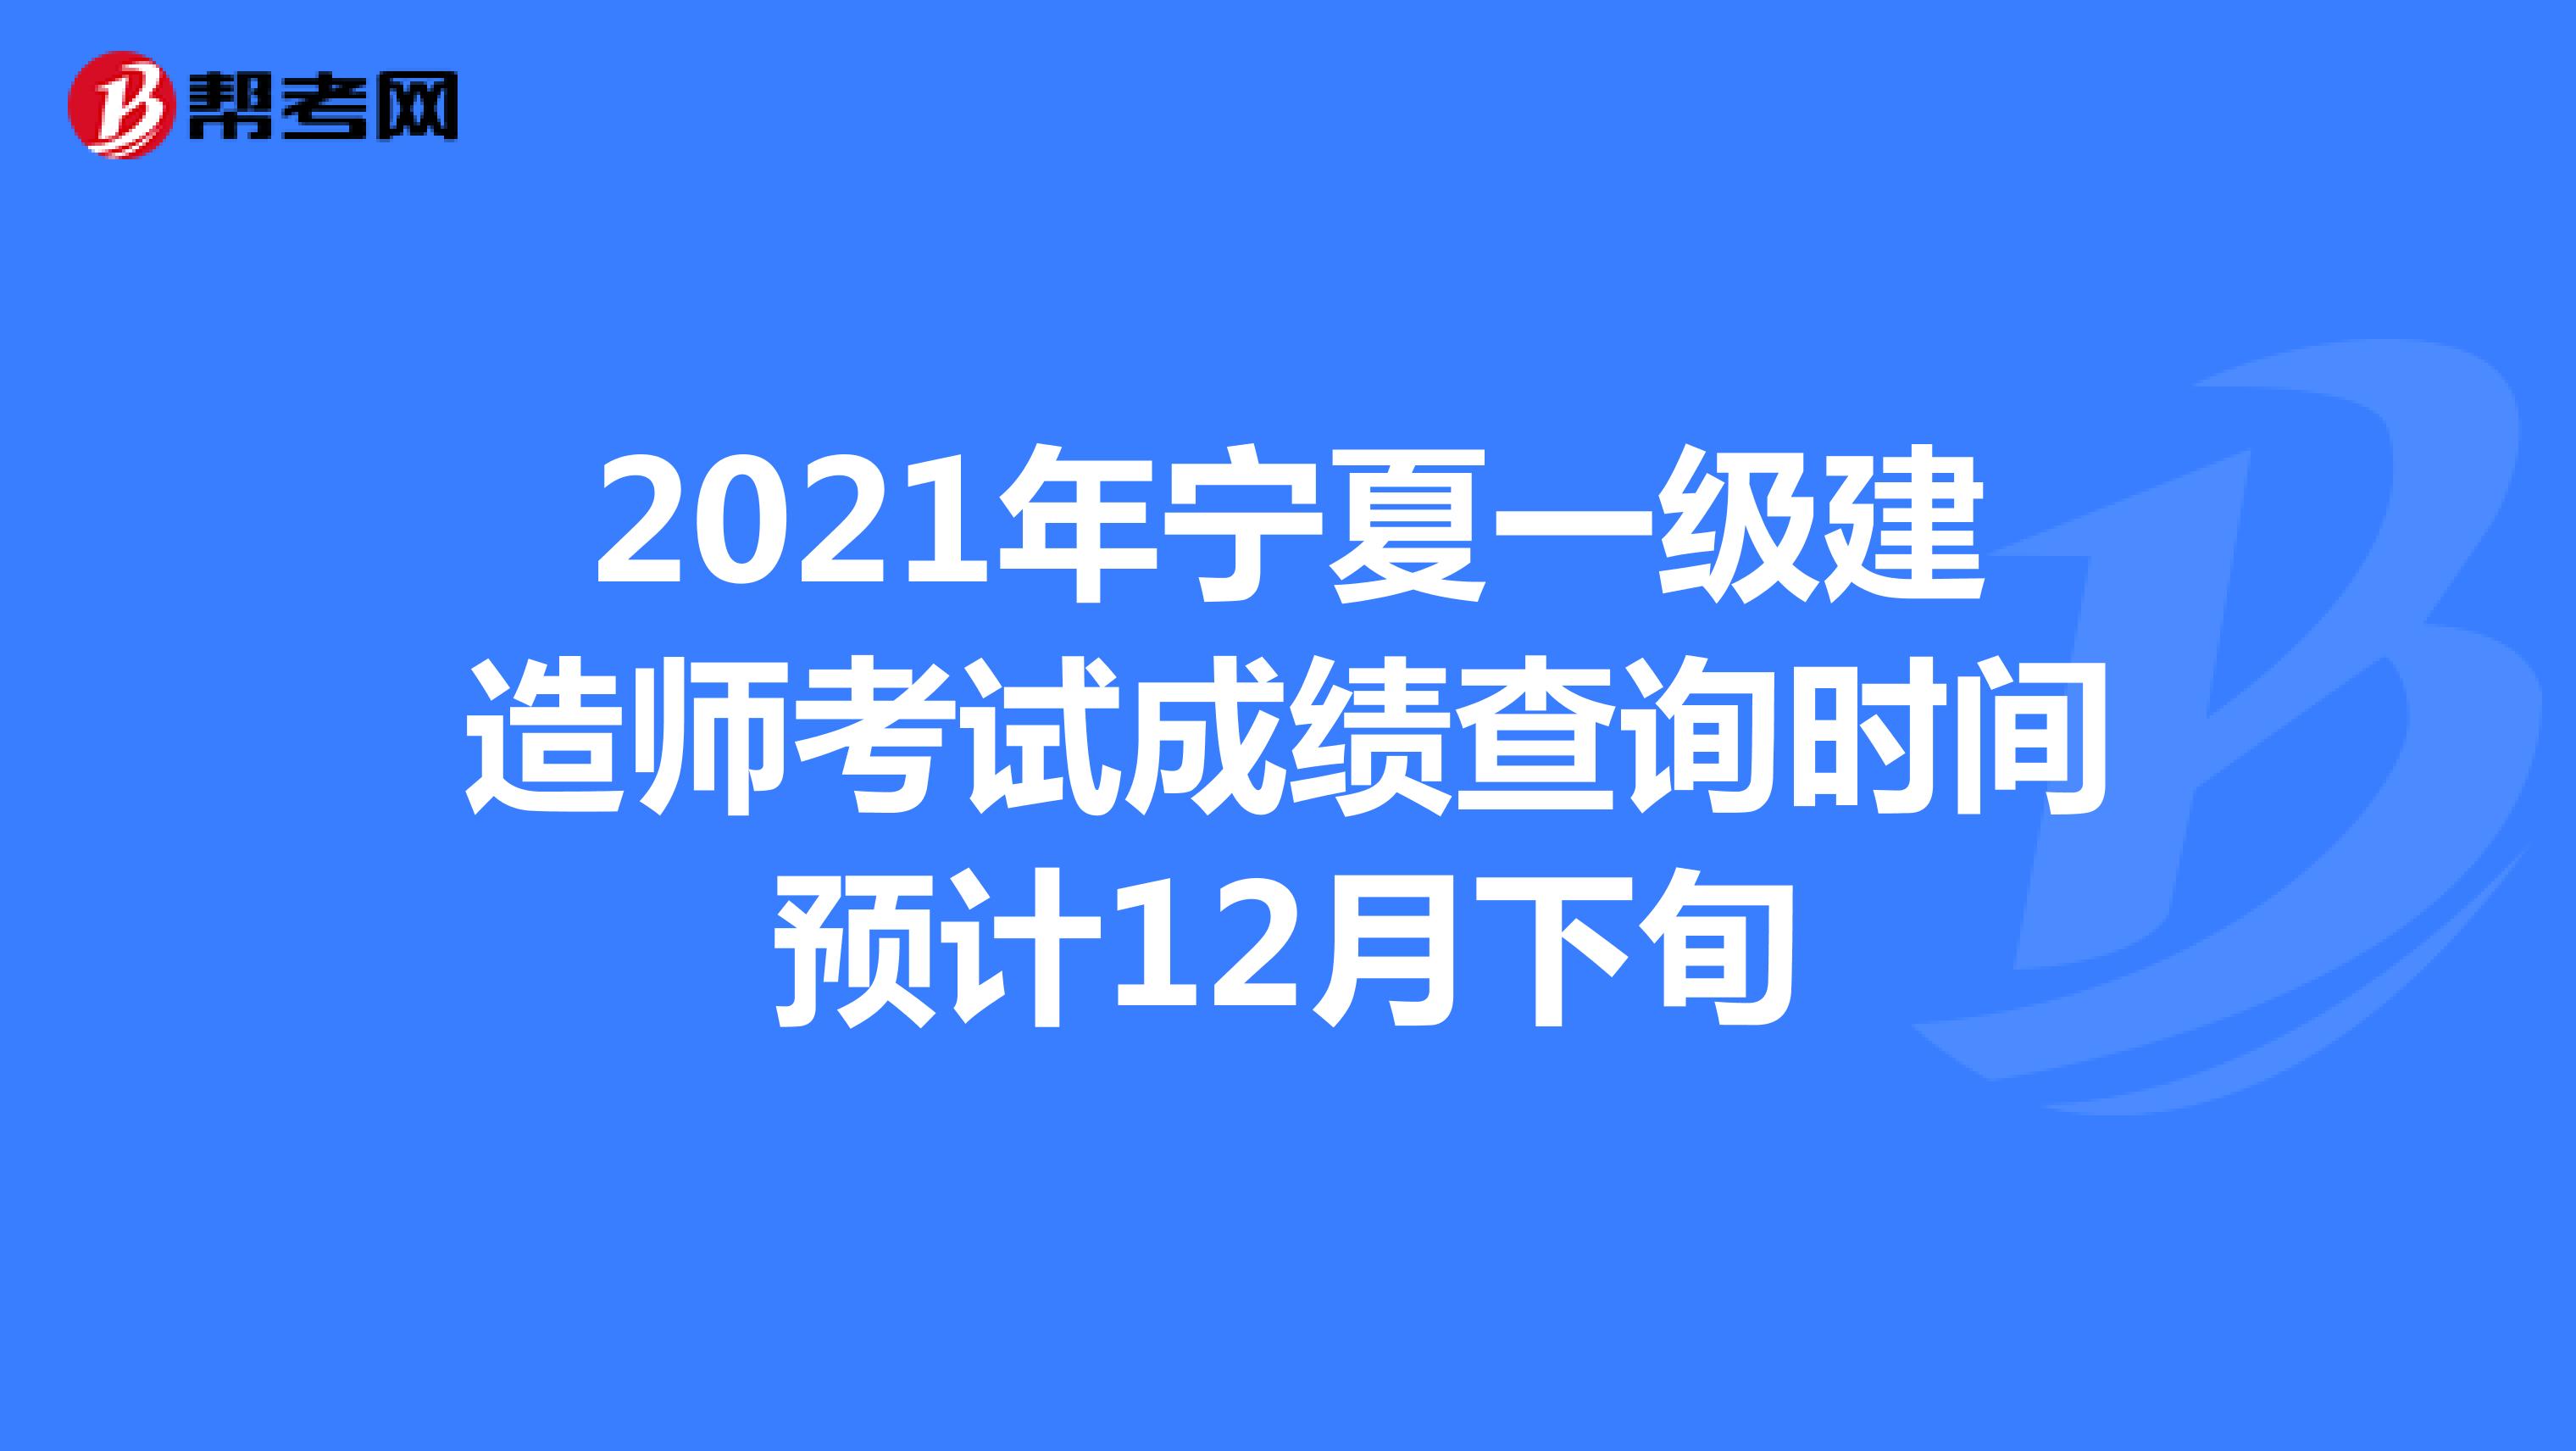 2021年宁夏一级建造师考试成绩查询时间预计12月下旬